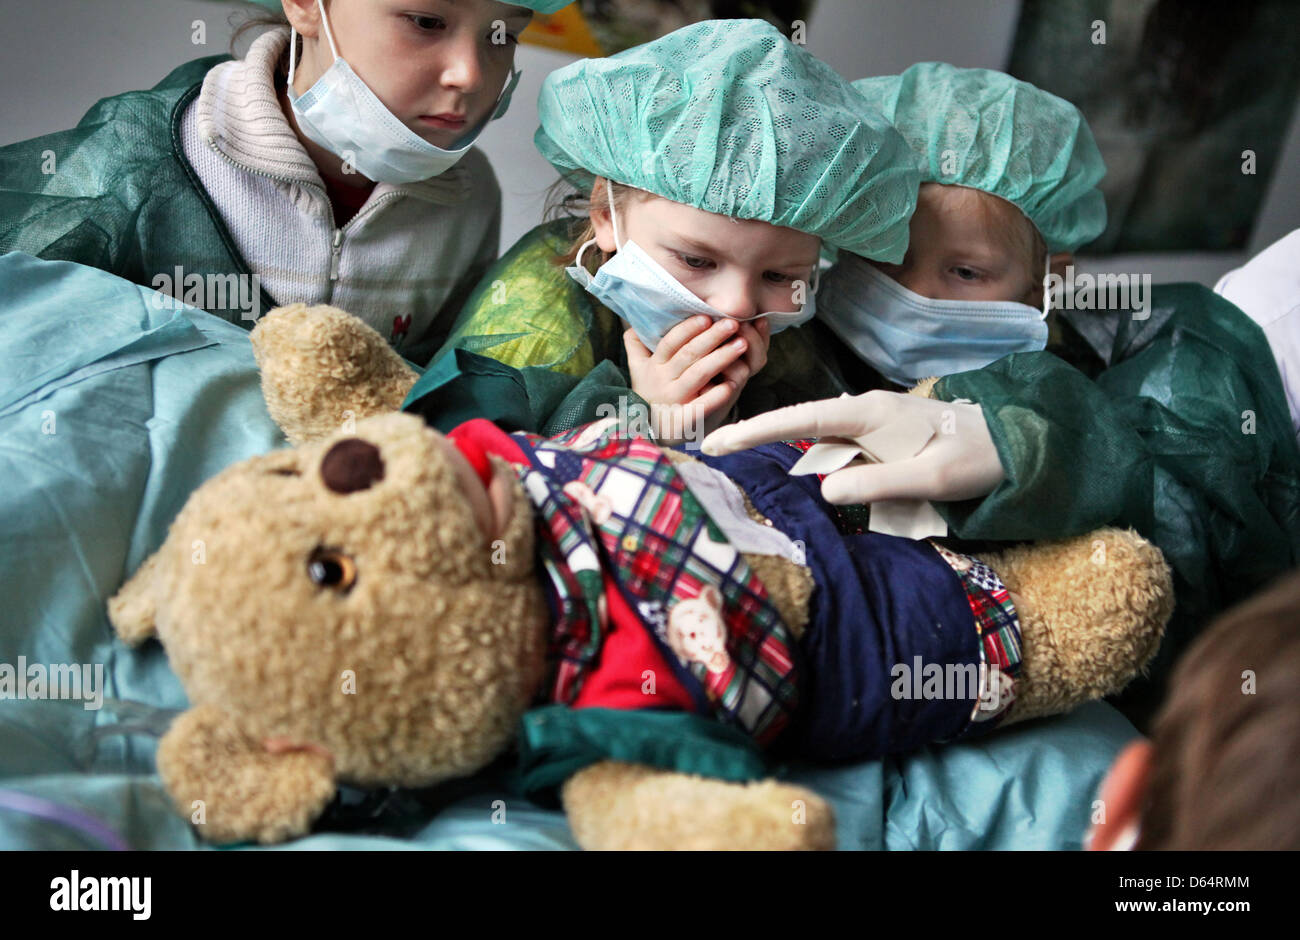 Los niños miran una operación en el osito de peluche "r" del "Oso Teddy  bear clínica' en Halle (Saale), Alemania, el 04 de junio de 2012. Durante  la cirugía, el apéndice del